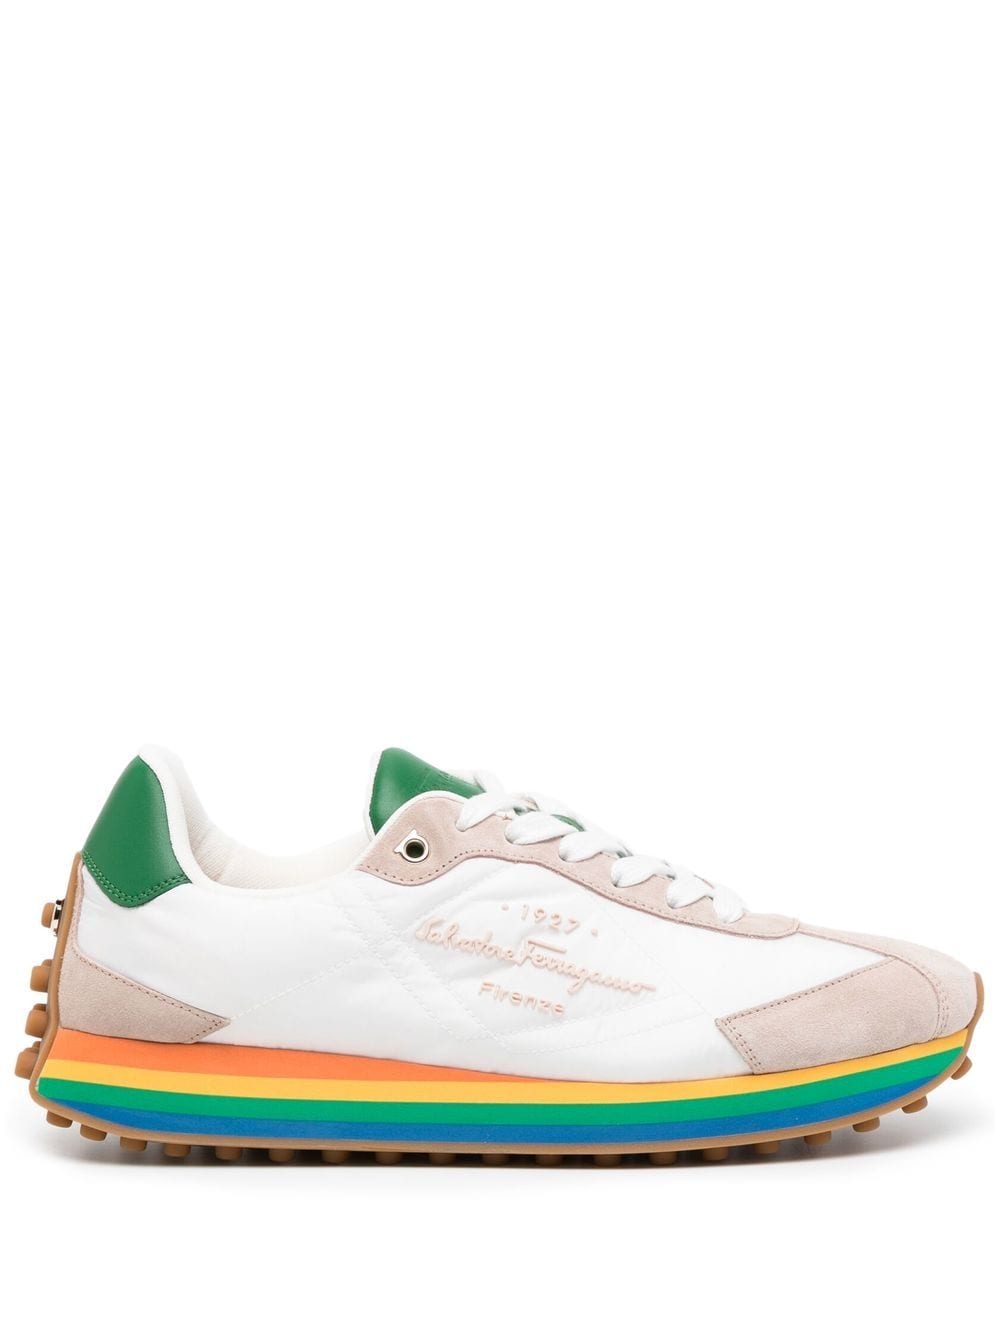 Ferragamo Iggy rainbow-sole sneakers - Multicolour von Ferragamo